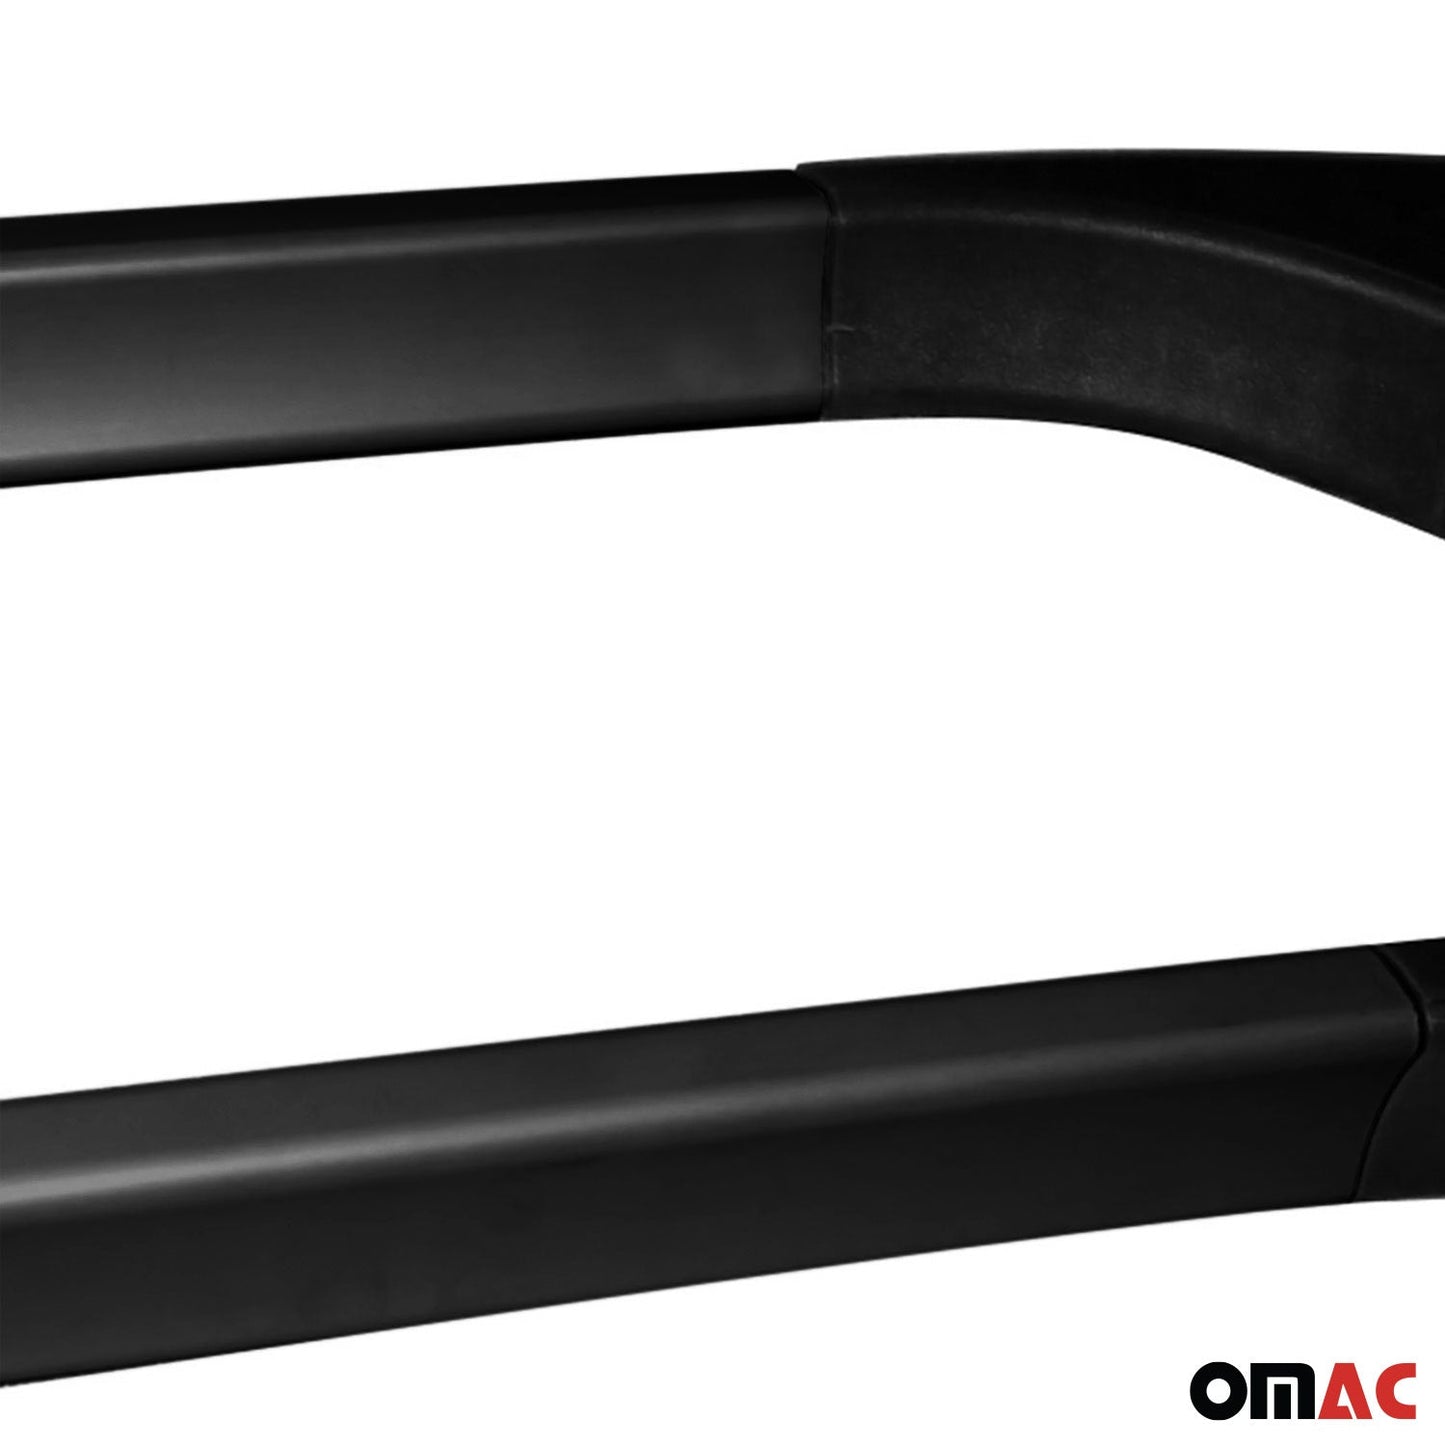 OMAC Roof Rack Side Rails Aluminium for Ford B-Max 2012-2017 Black 2Pcs U012898